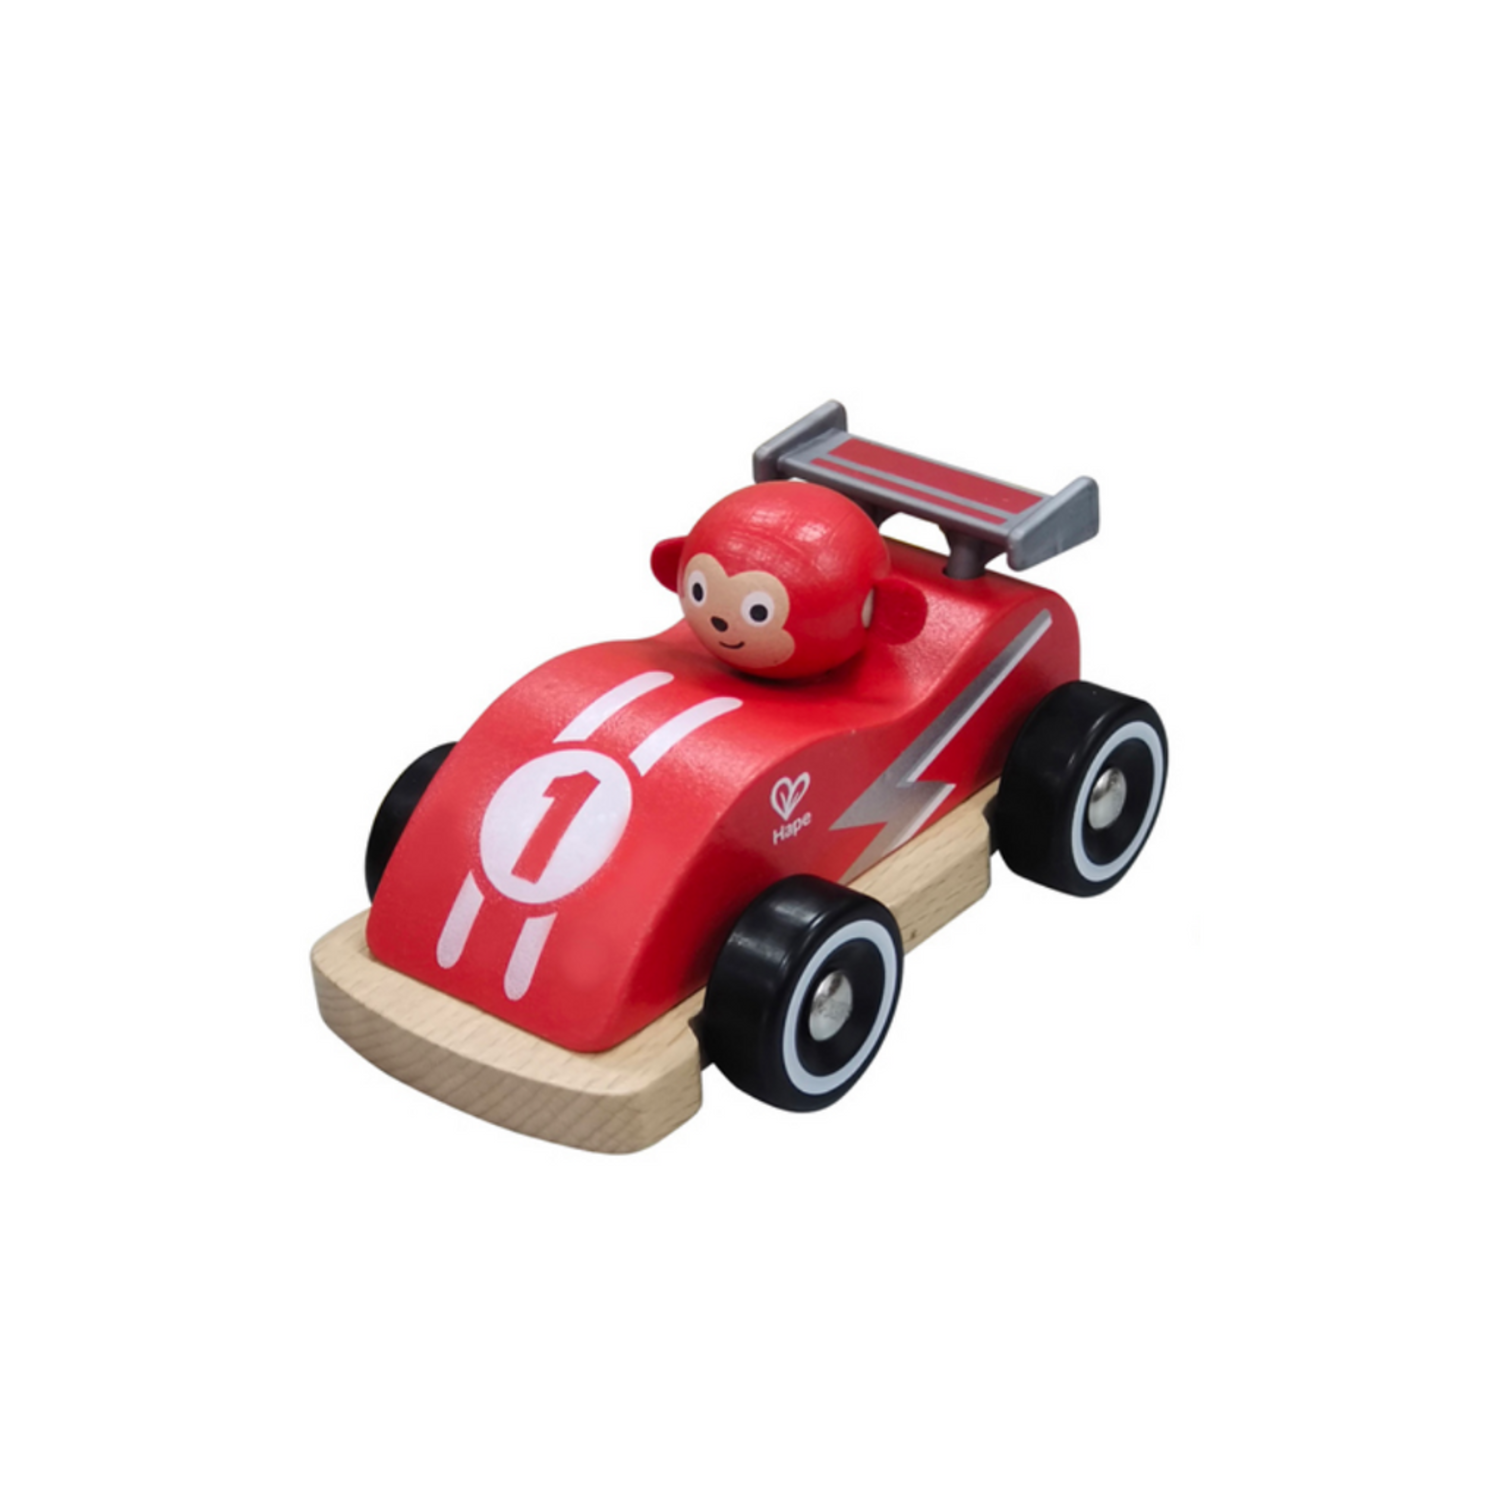 Petite voiture rouge pour enfant